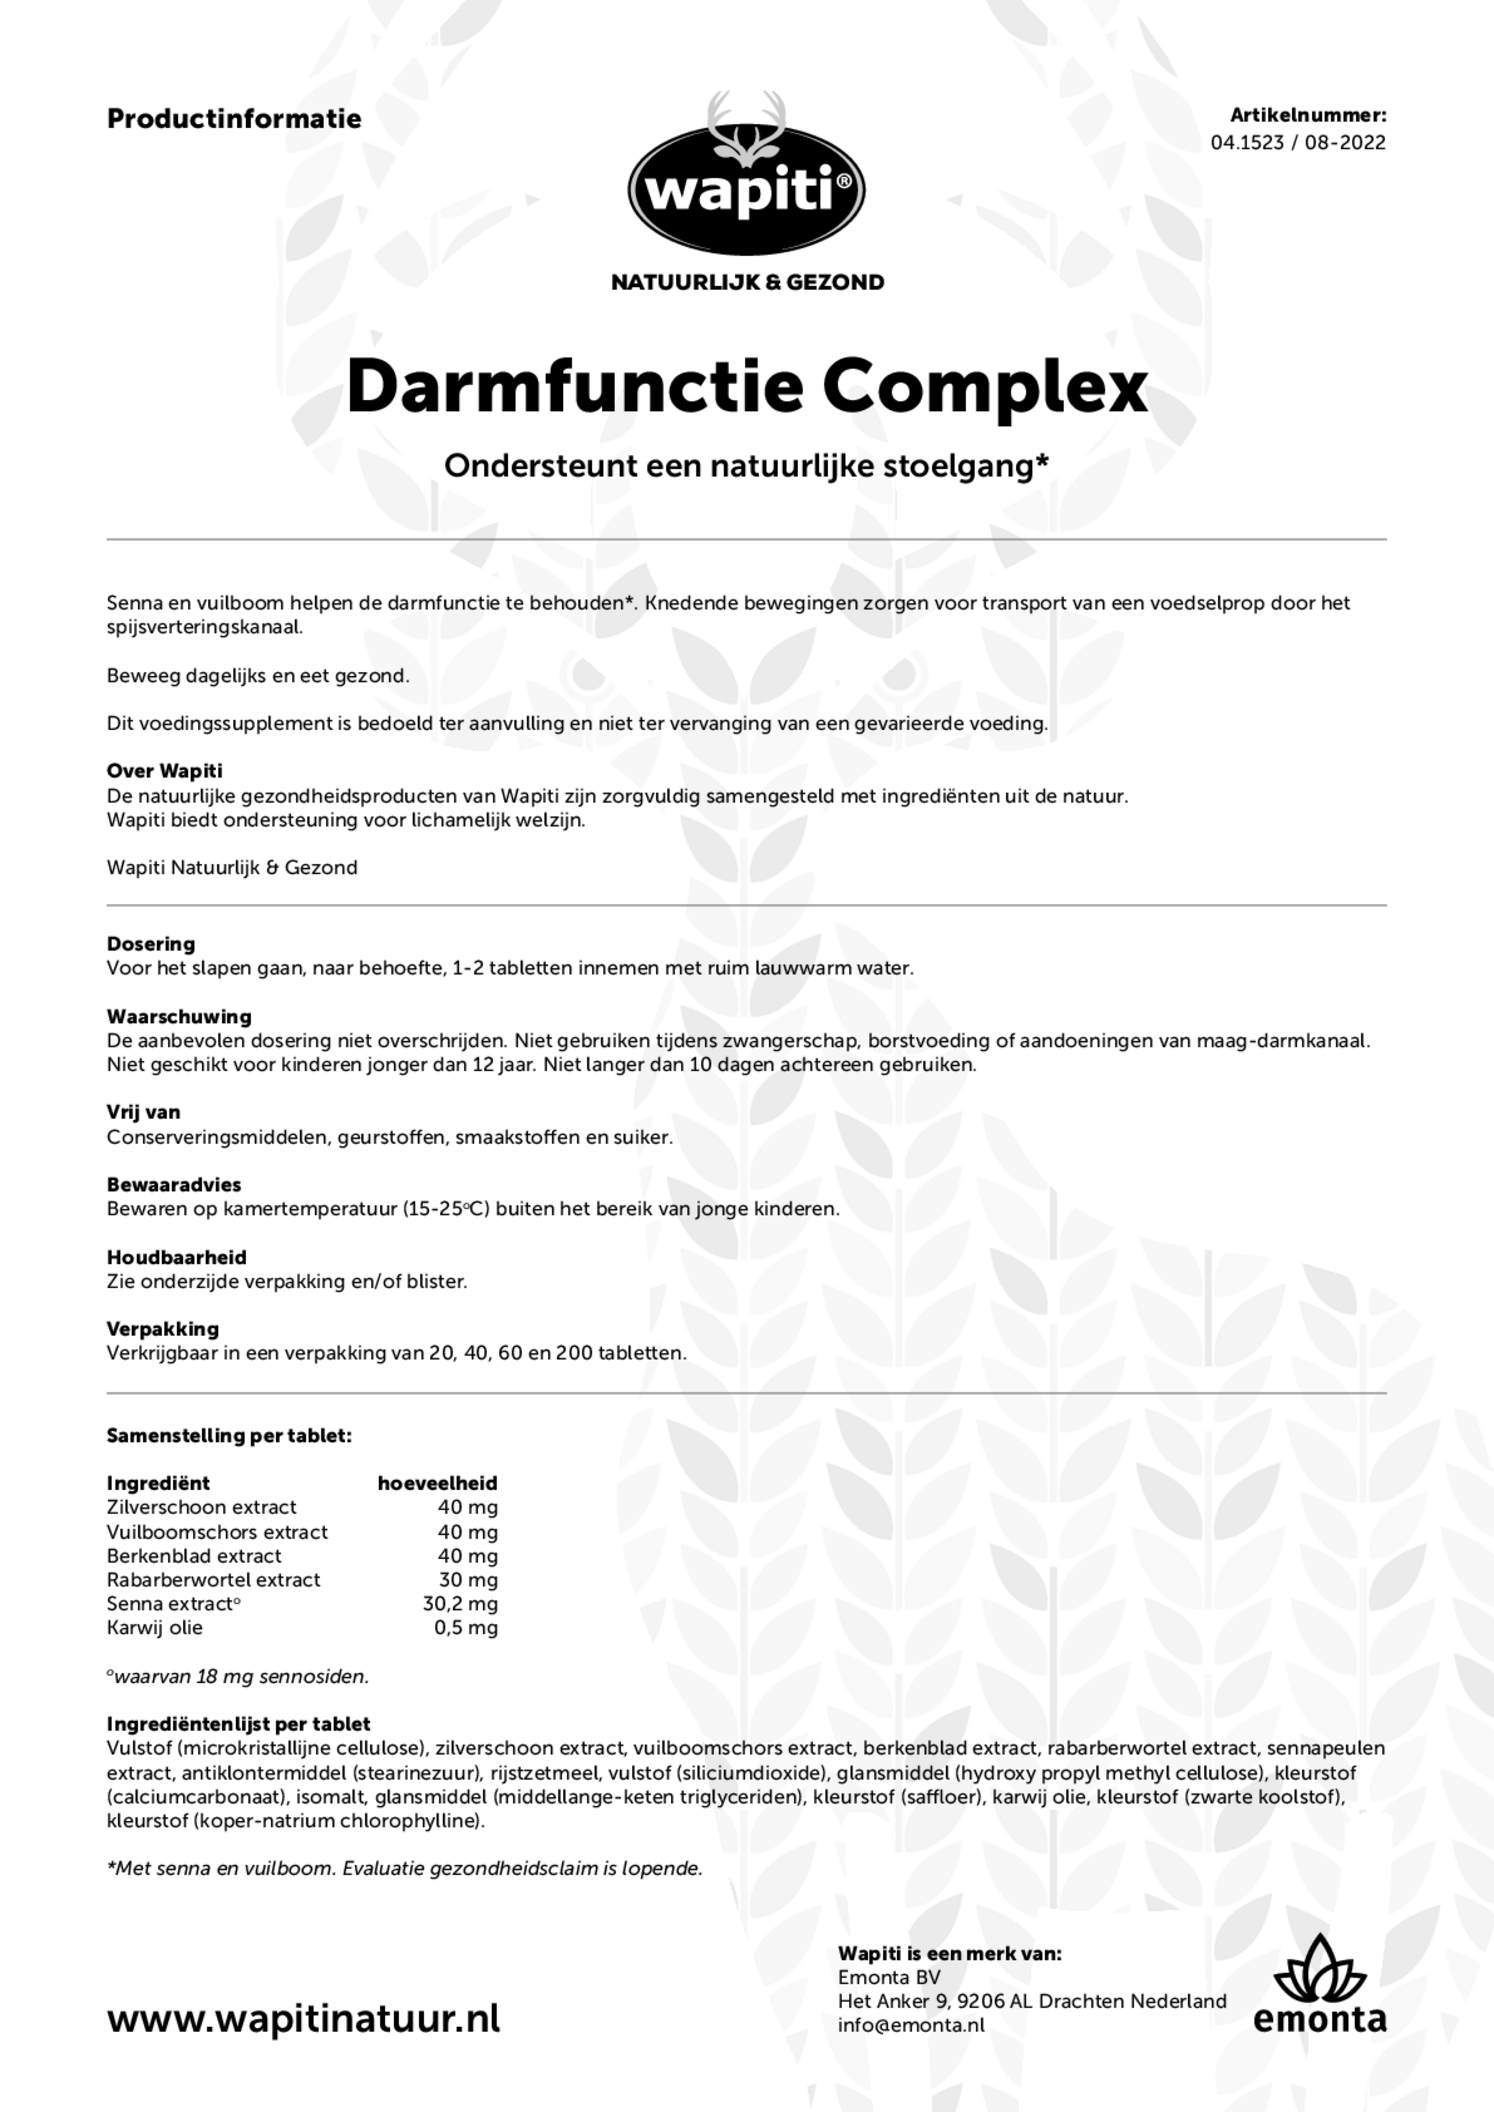 Darmfunctie Complex Tabletten afbeelding van document #1, gebruiksaanwijzing